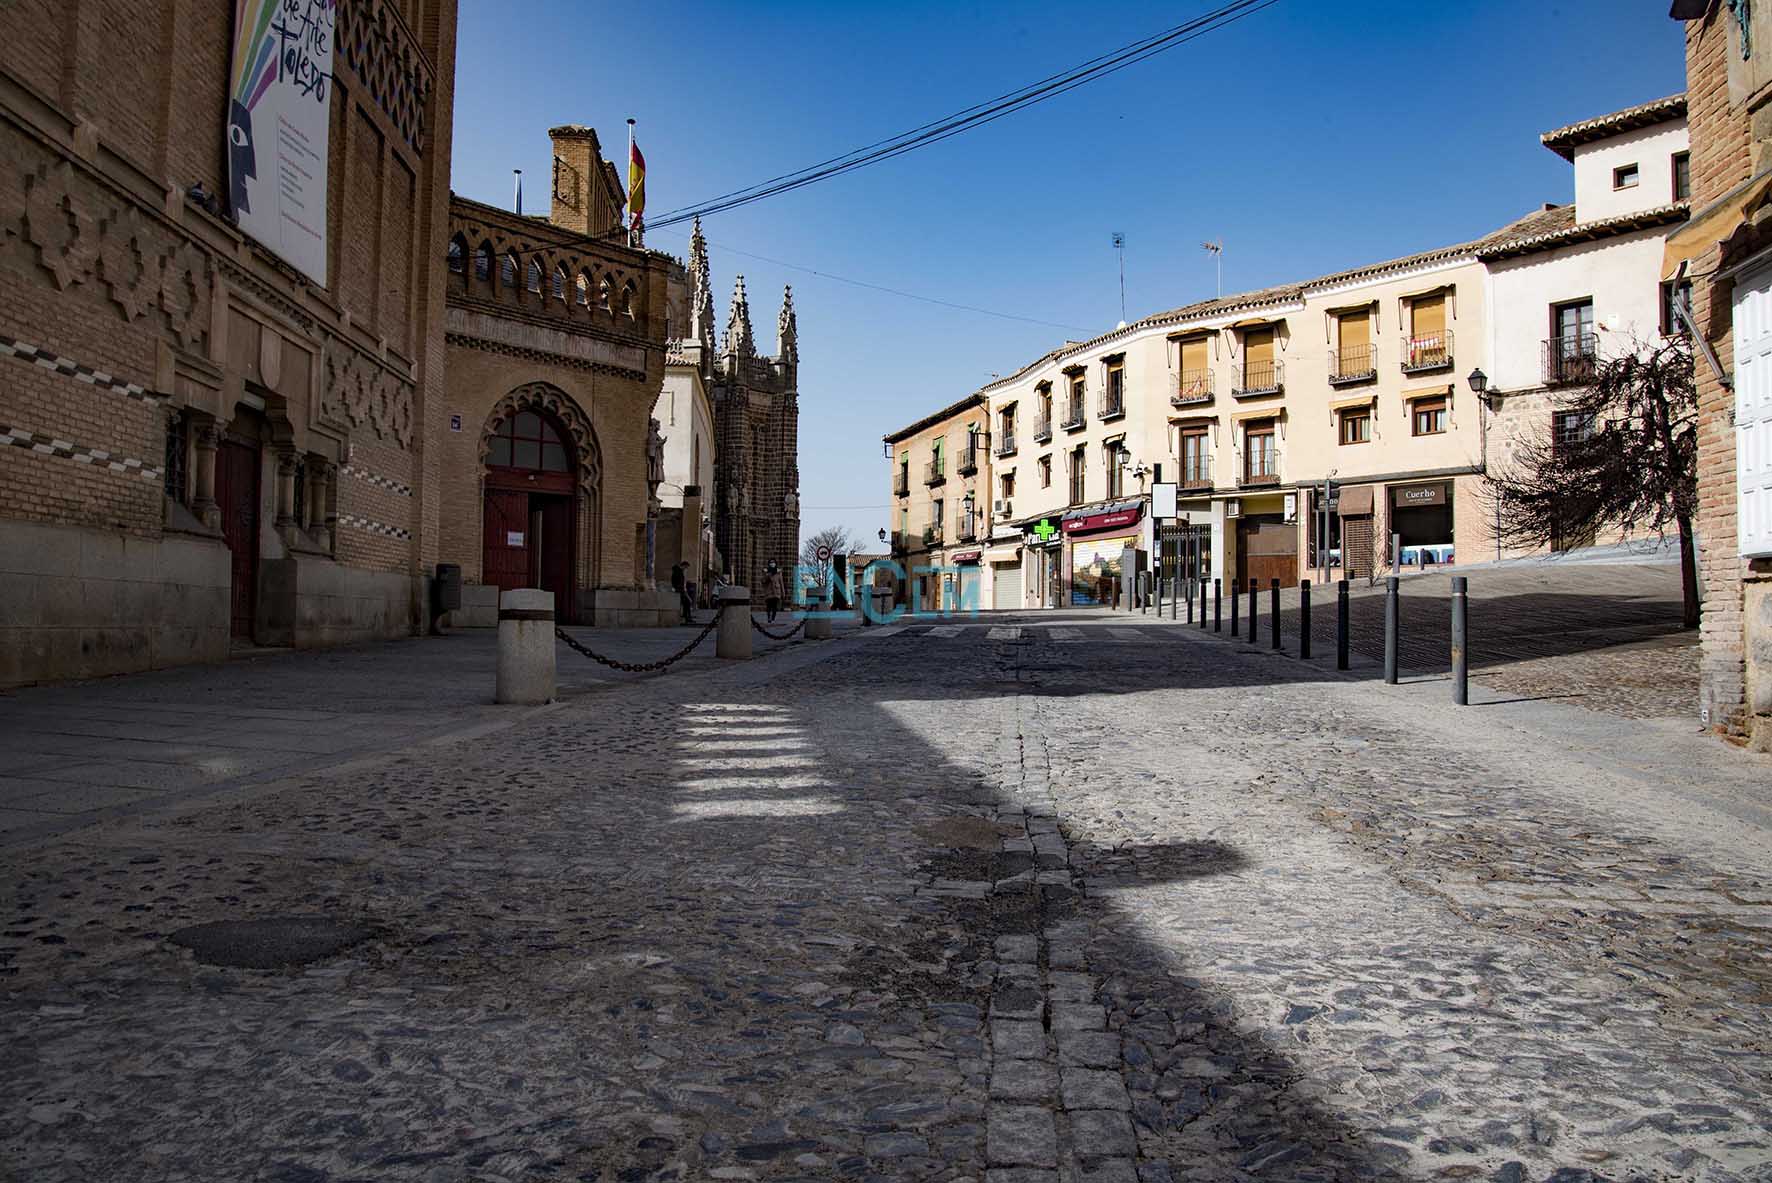 La calle Reyes Católicos, una de las principales vías de entrada al casco histórico, será reformada de forma integral. Foto: Rebeca Arango.